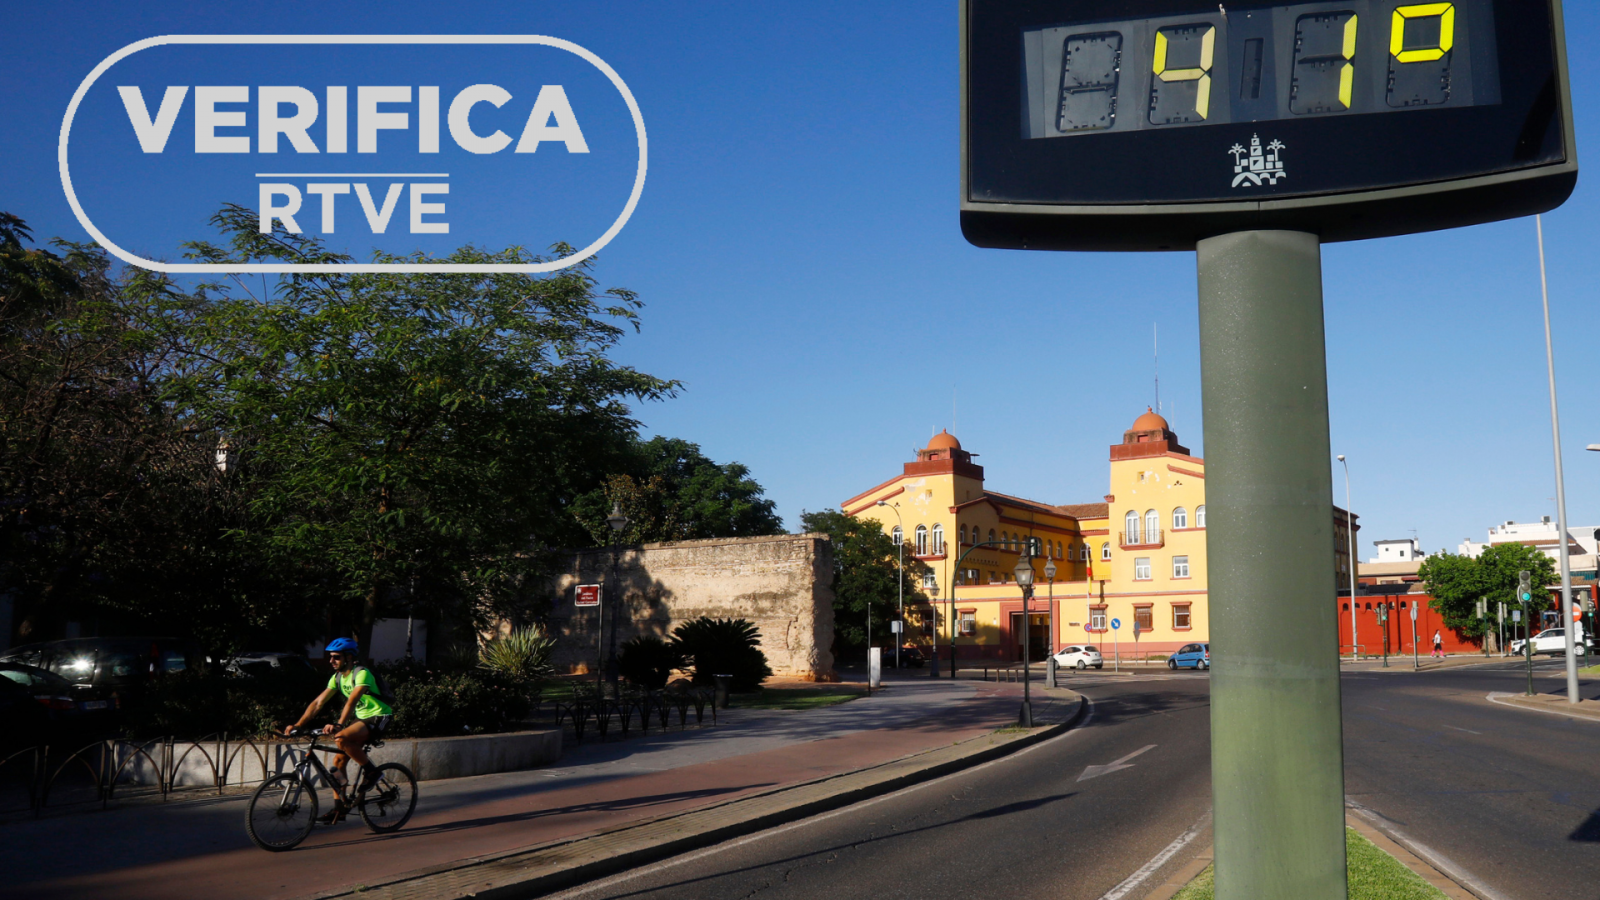 Imagen de la agencia EFE donde un ciclista pasa junto a un termómetro que marca 41 grados en Córdoba, con el sello VerificaRTVE en blanco